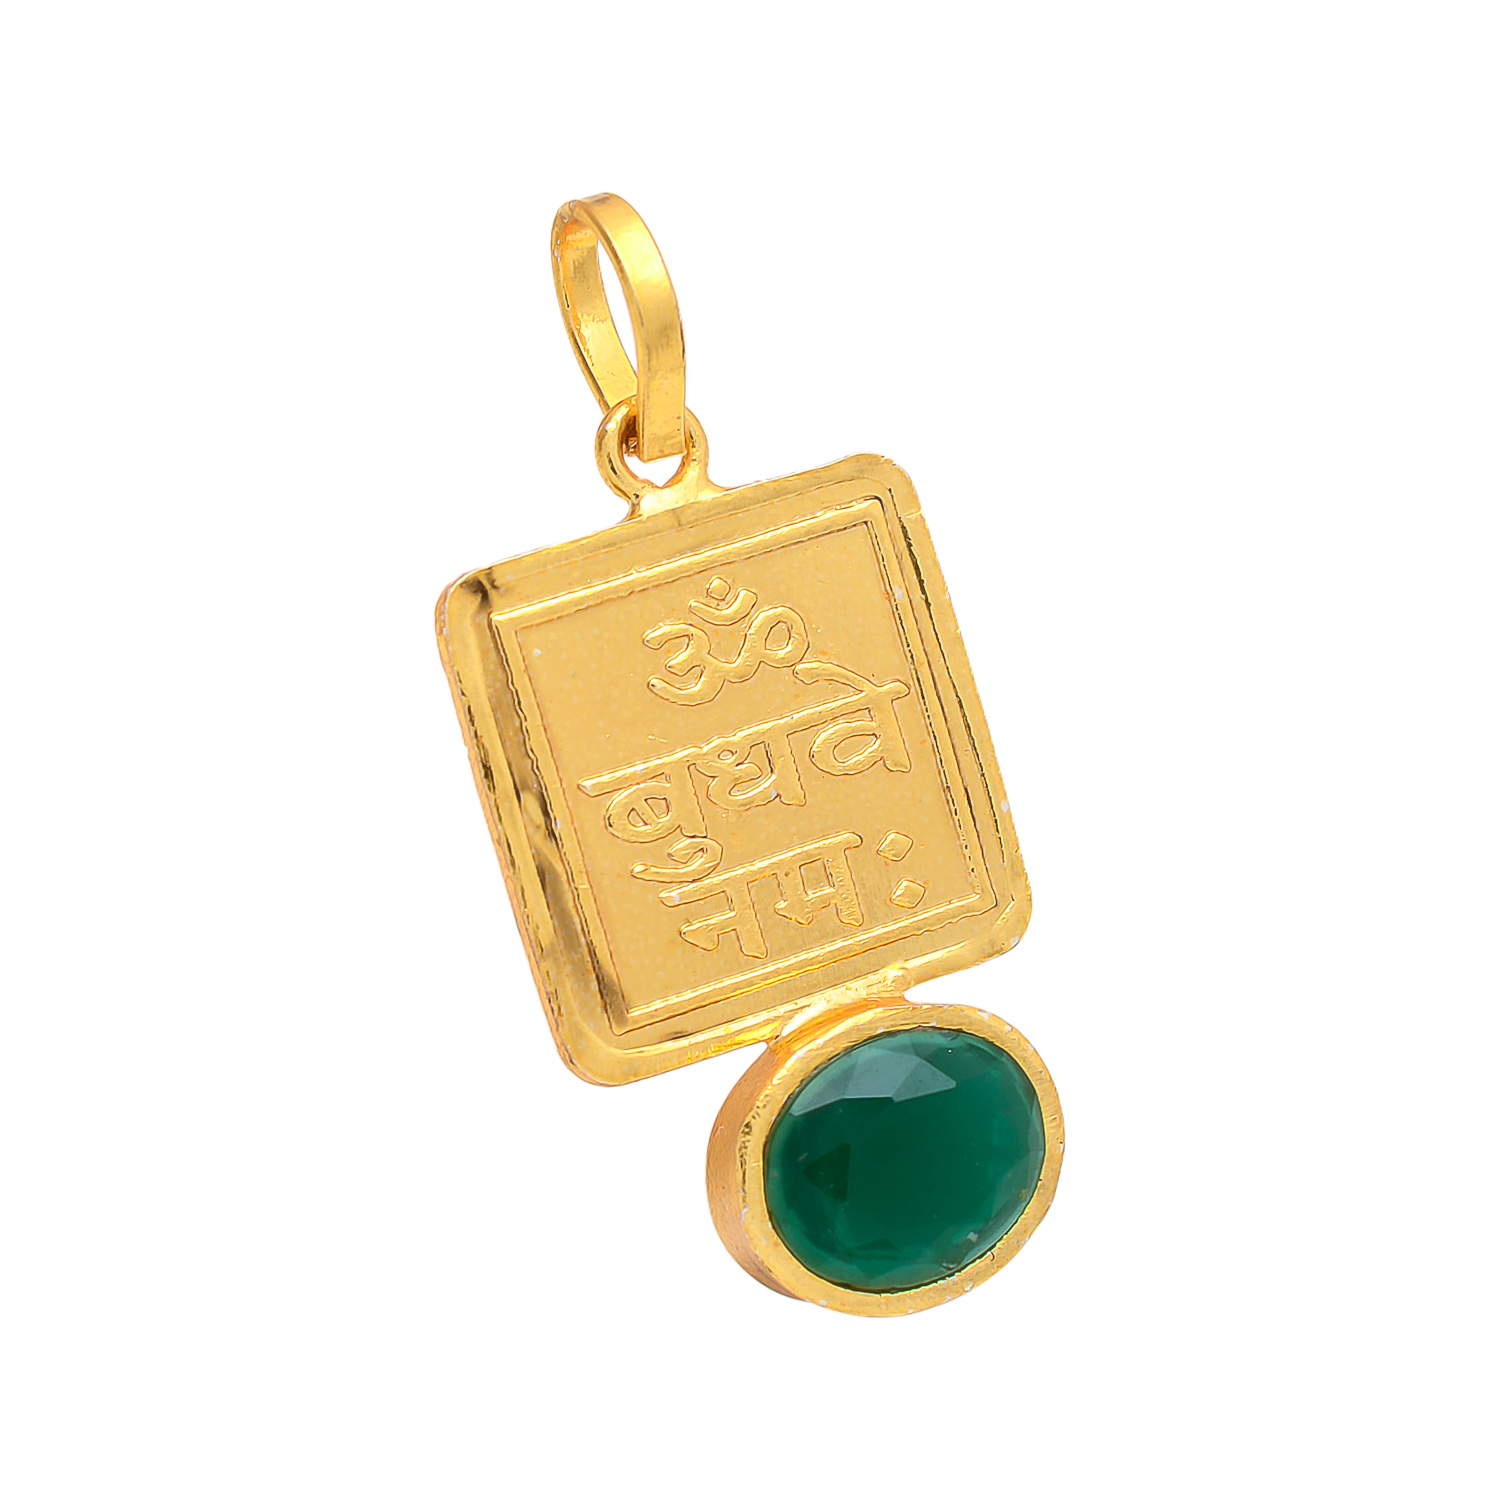 Mithun/Gemini & Kanya/Virgo Zodiac Emerald Stone Rashi Pendant